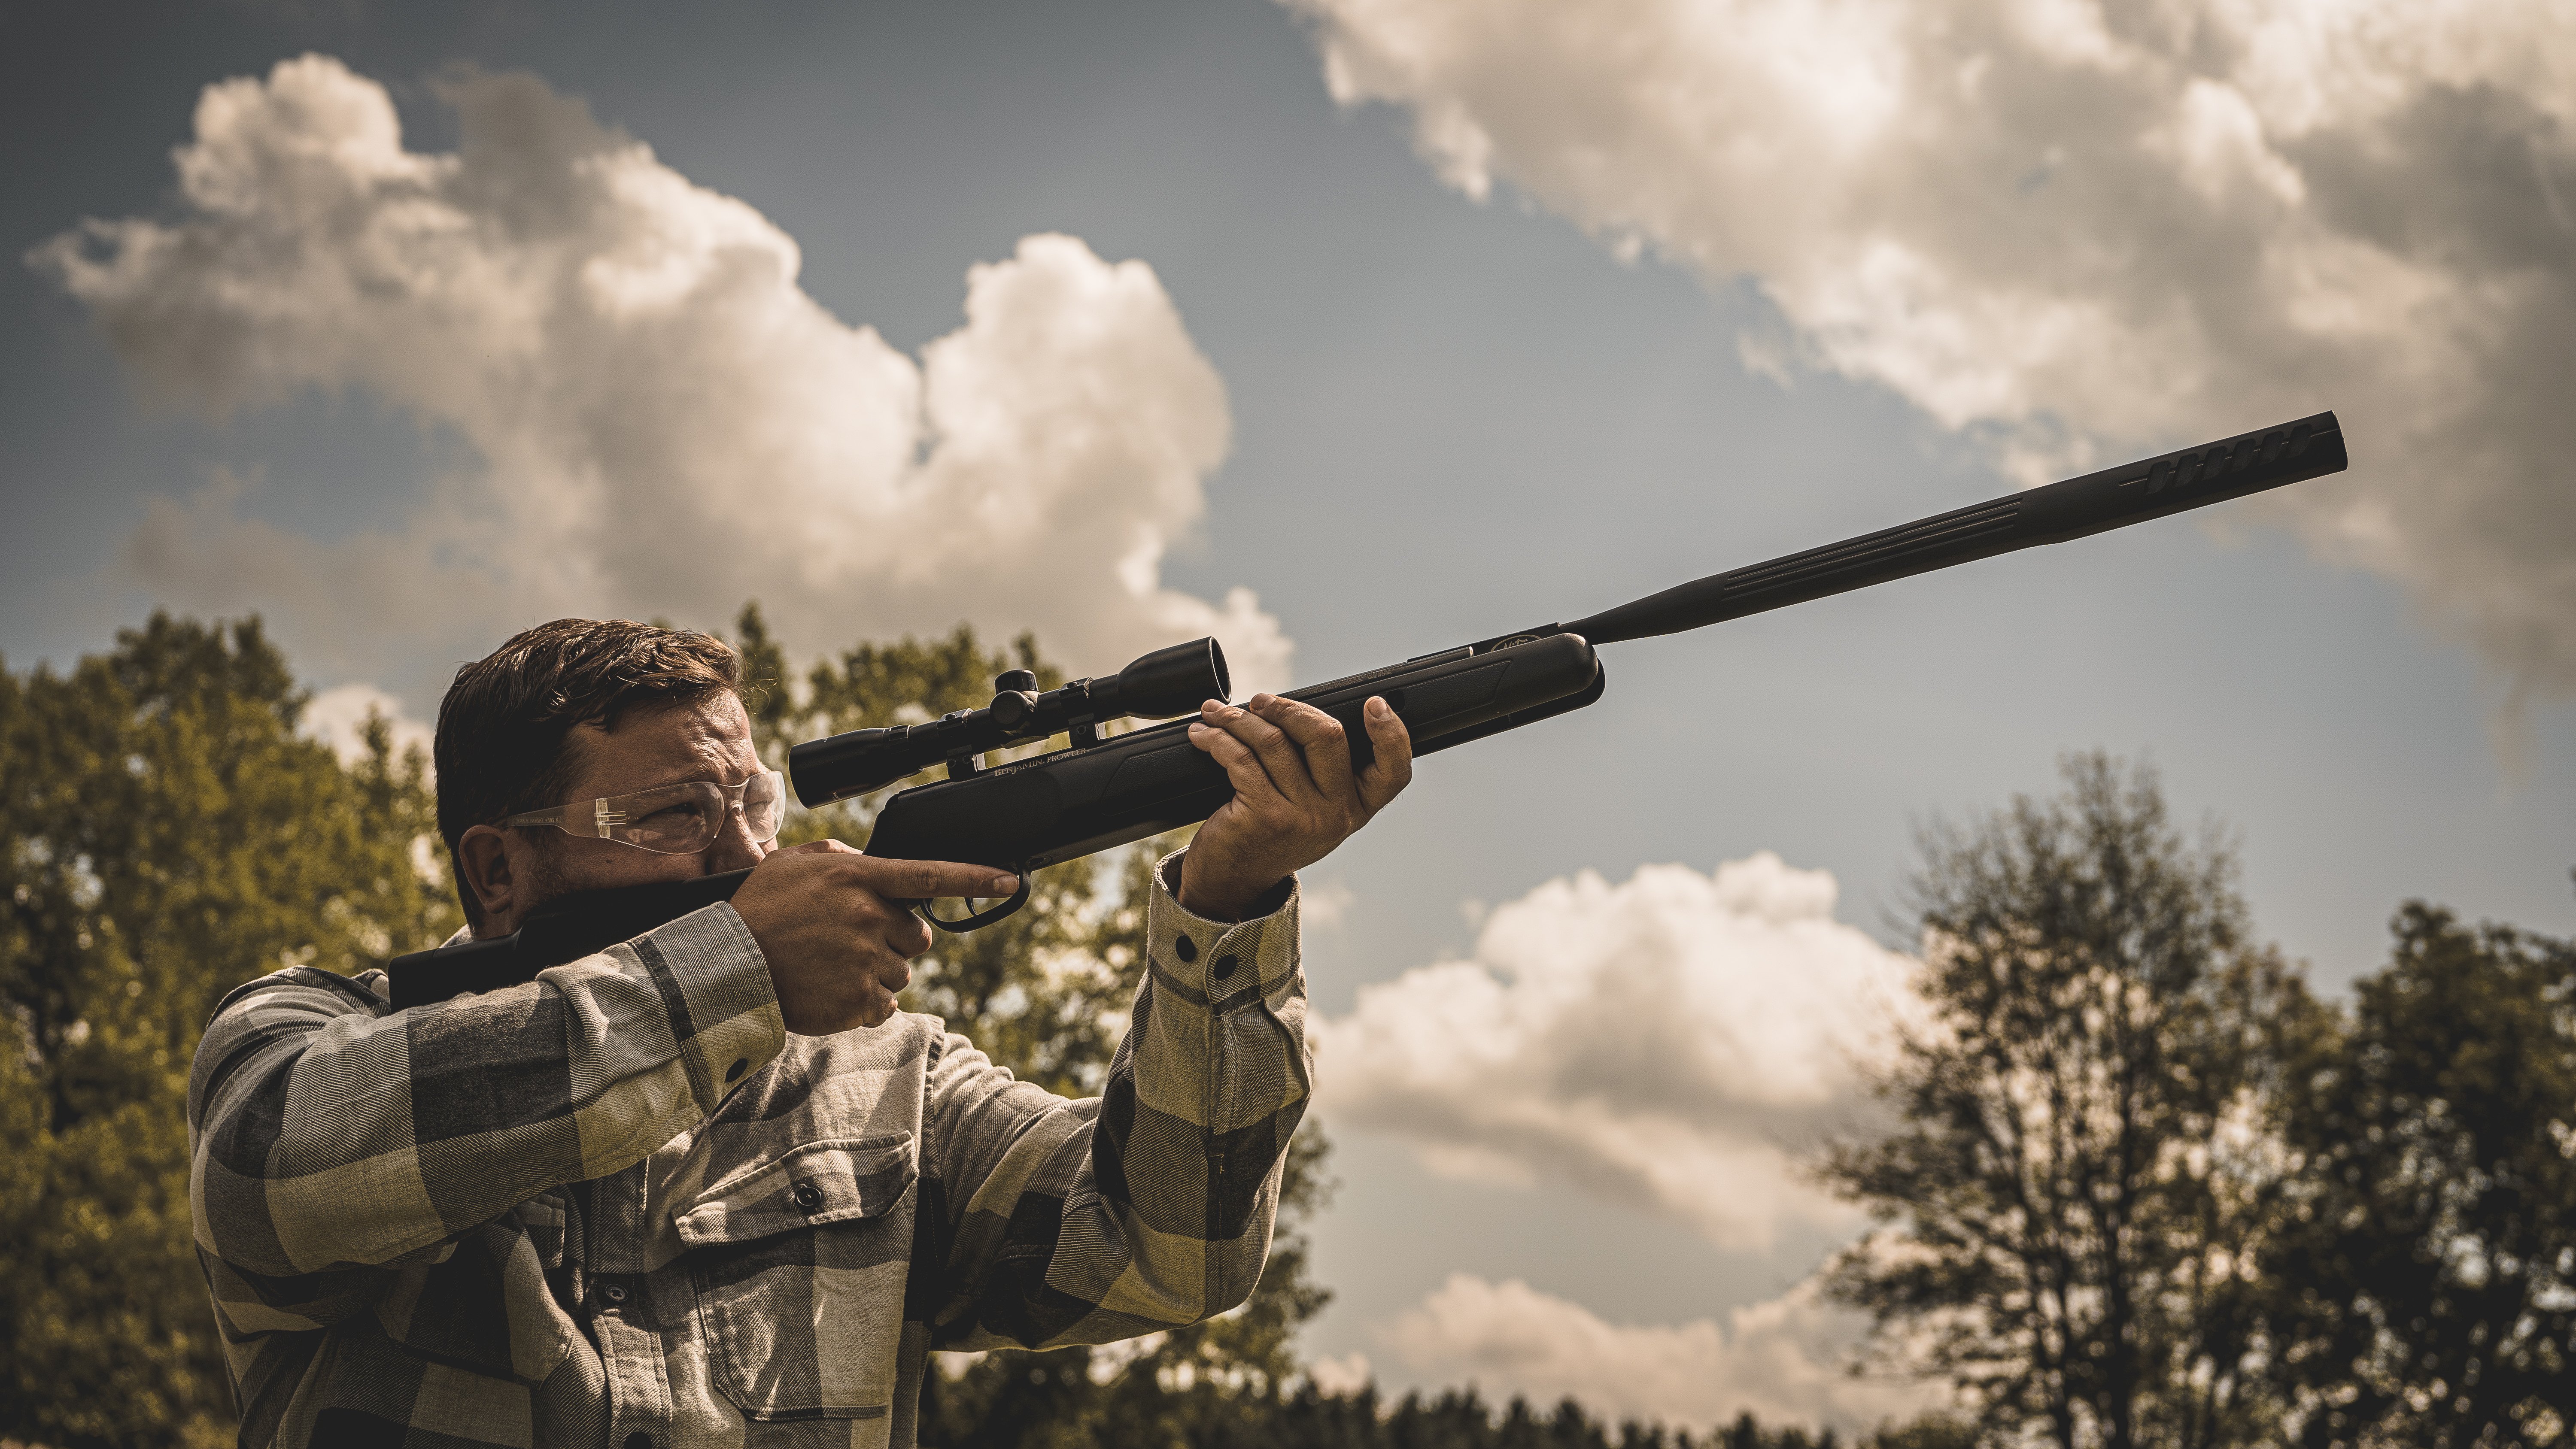 A hunter aiming a Benjamin Prowler NP